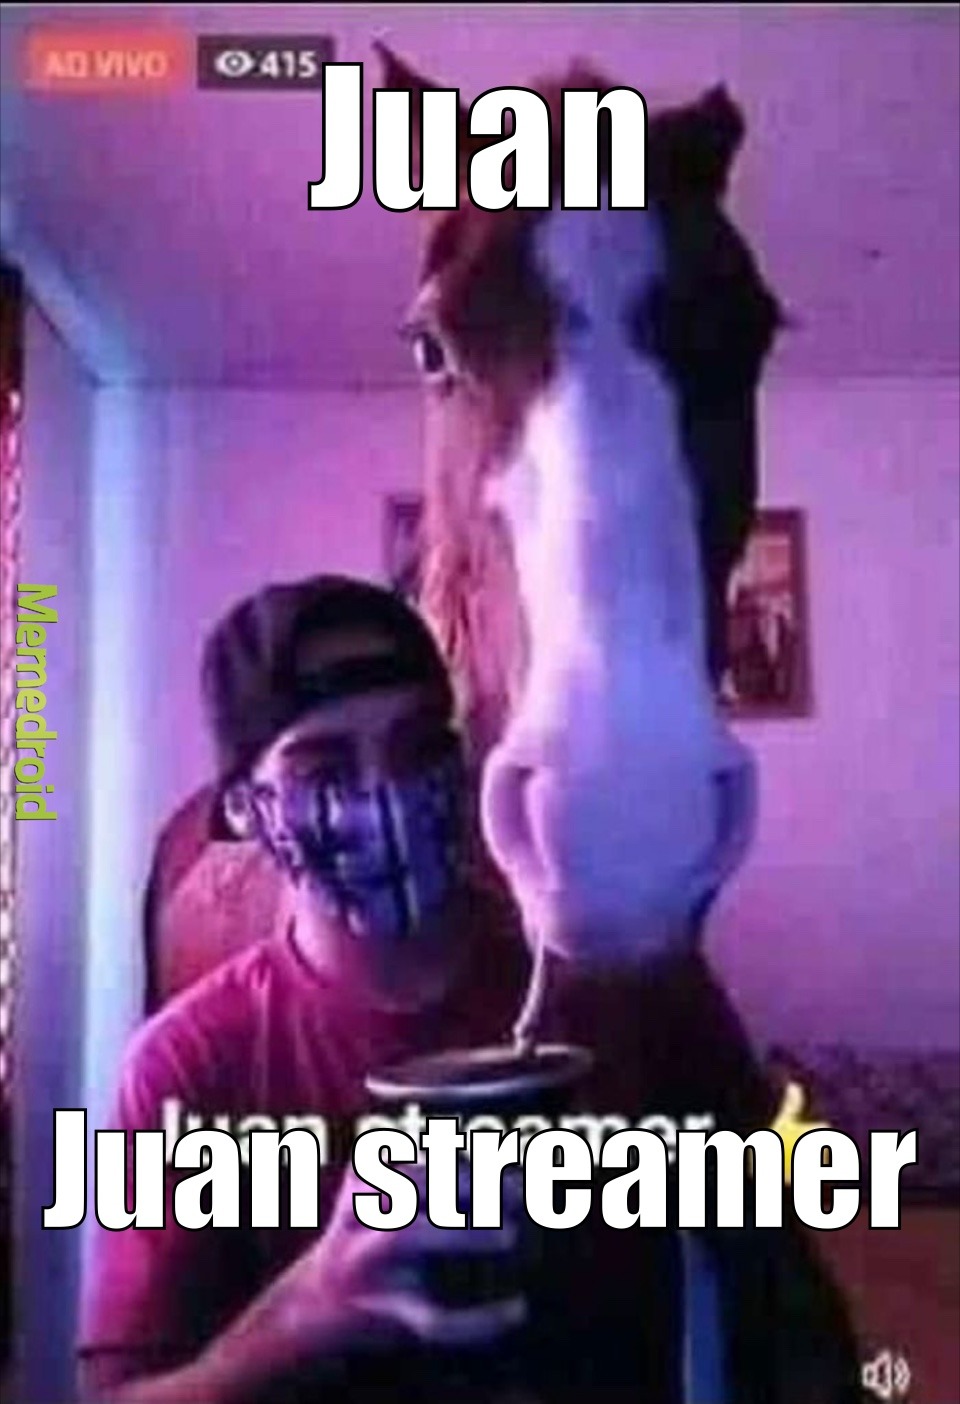 Juan streamer - meme